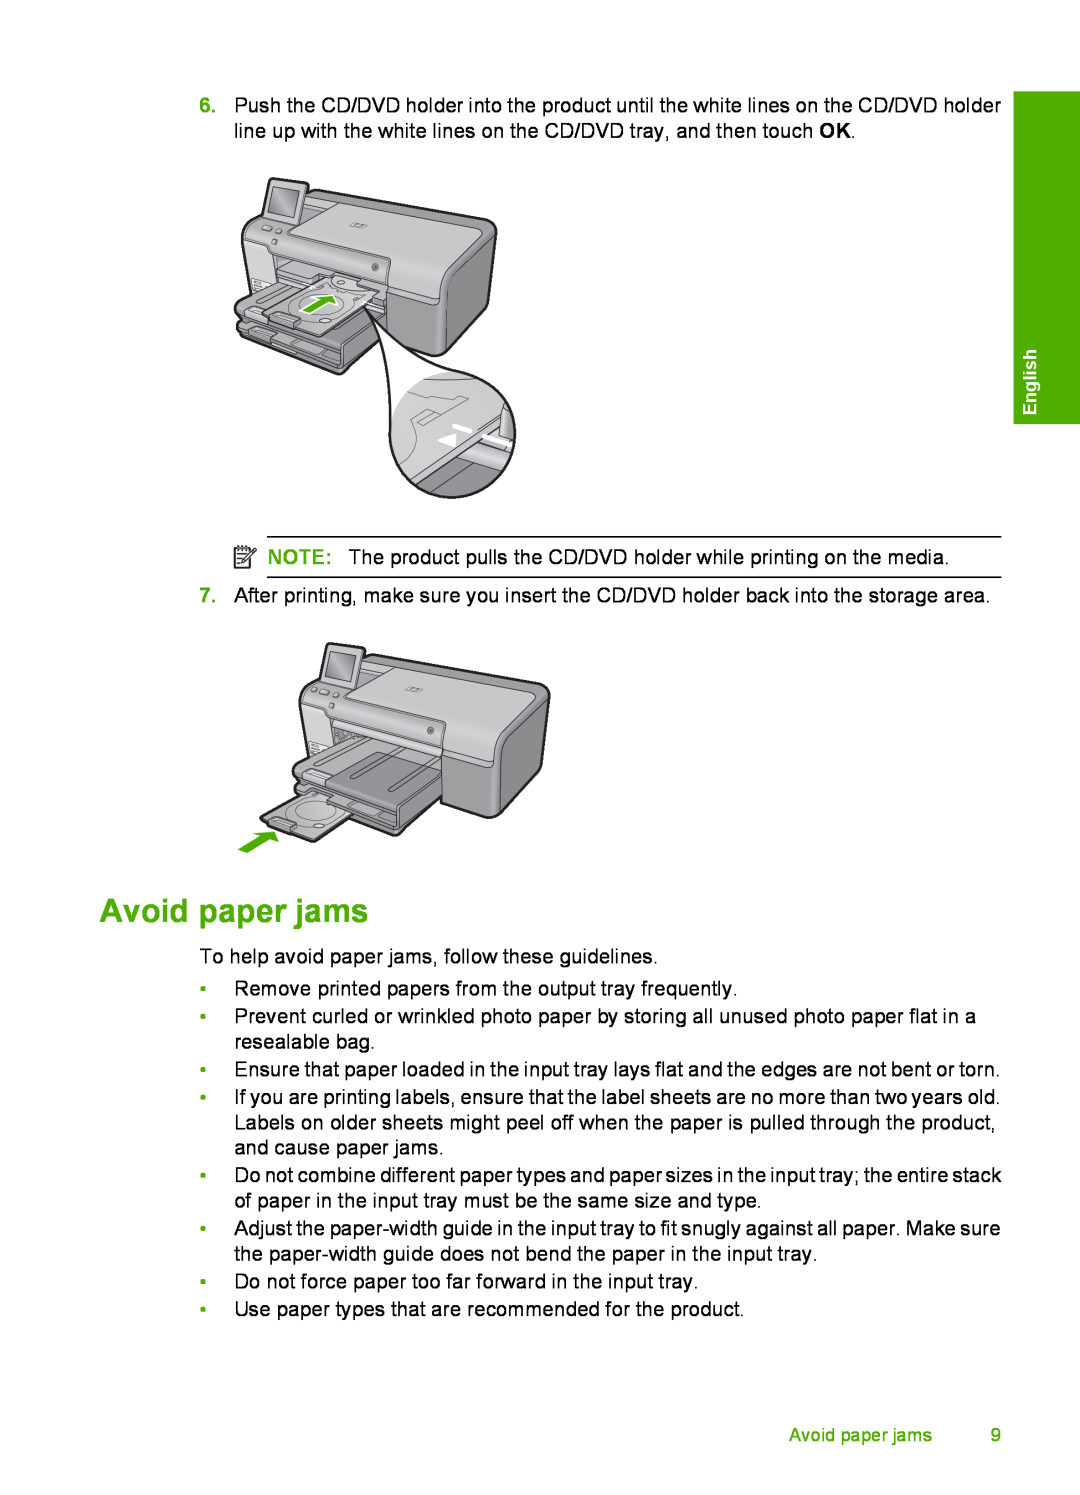 HP D7560 manual Avoid paper jams 